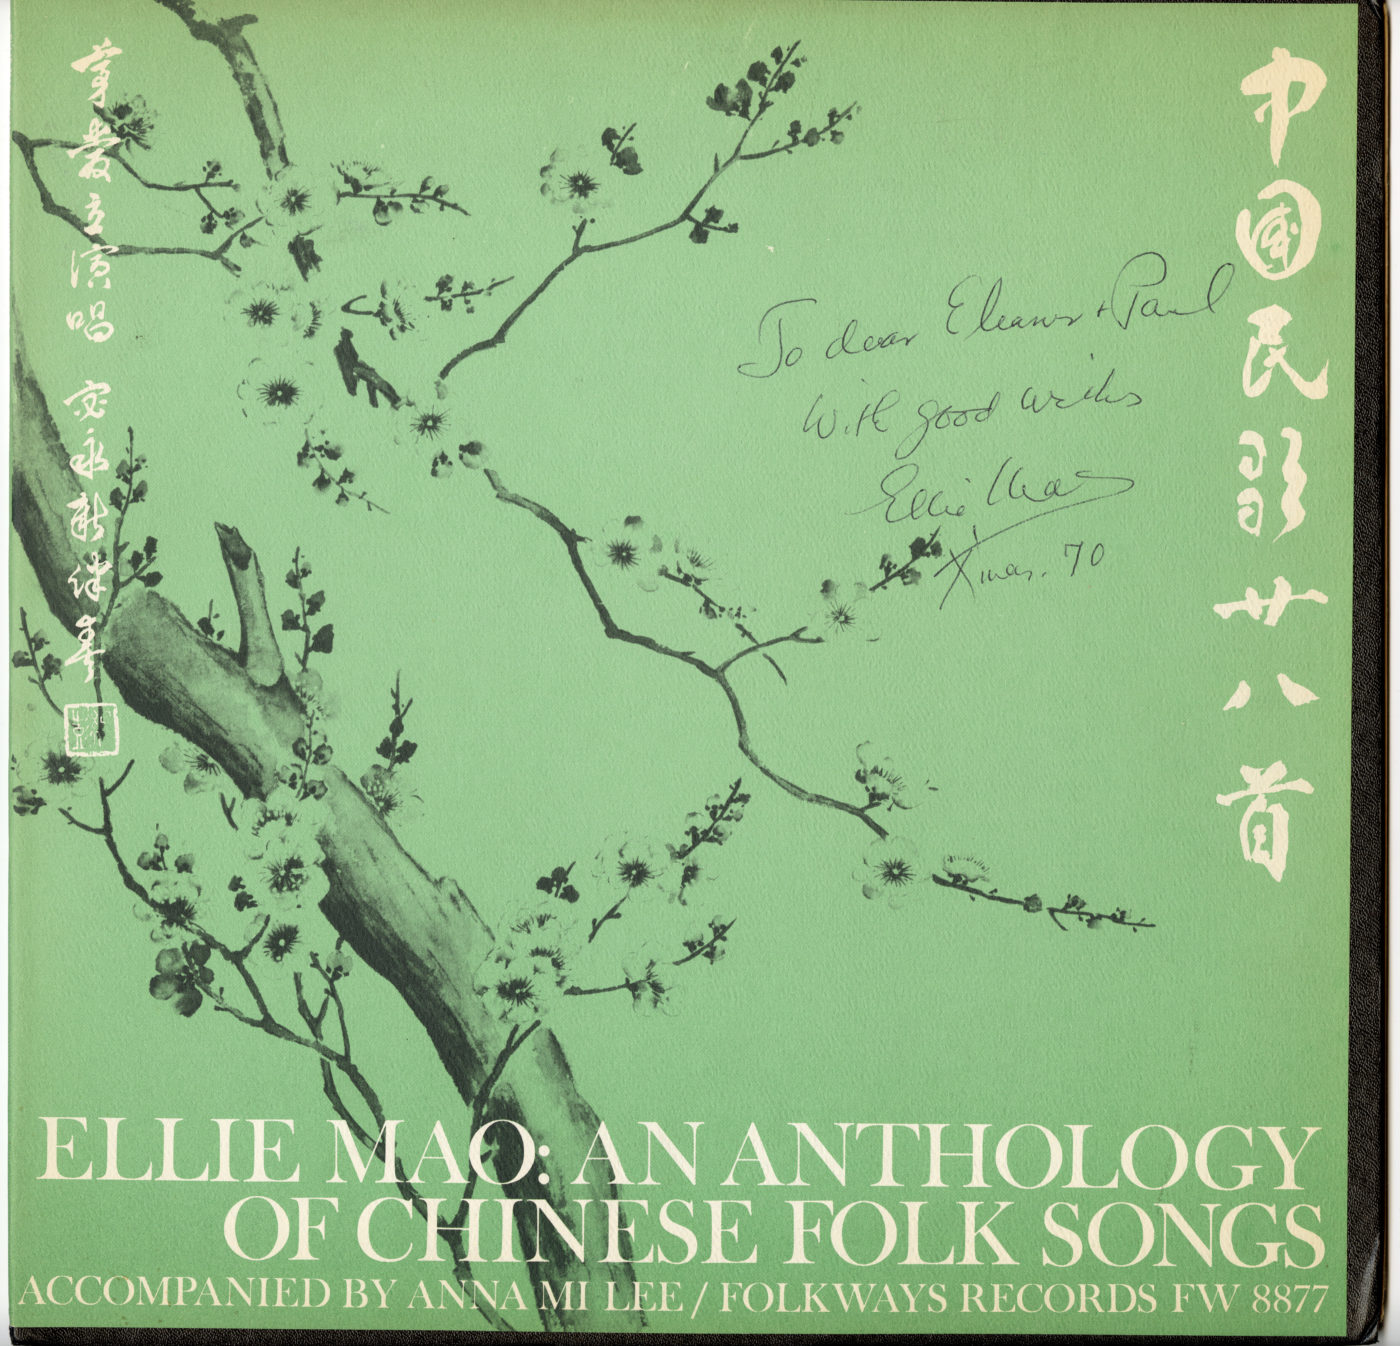 茅爱立专辑封套正面：中国民歌选集，宓永新伴奏。由Eleanor Wu Clifford 捐赠，美国华人博物馆 (MOCA) 馆藏。 